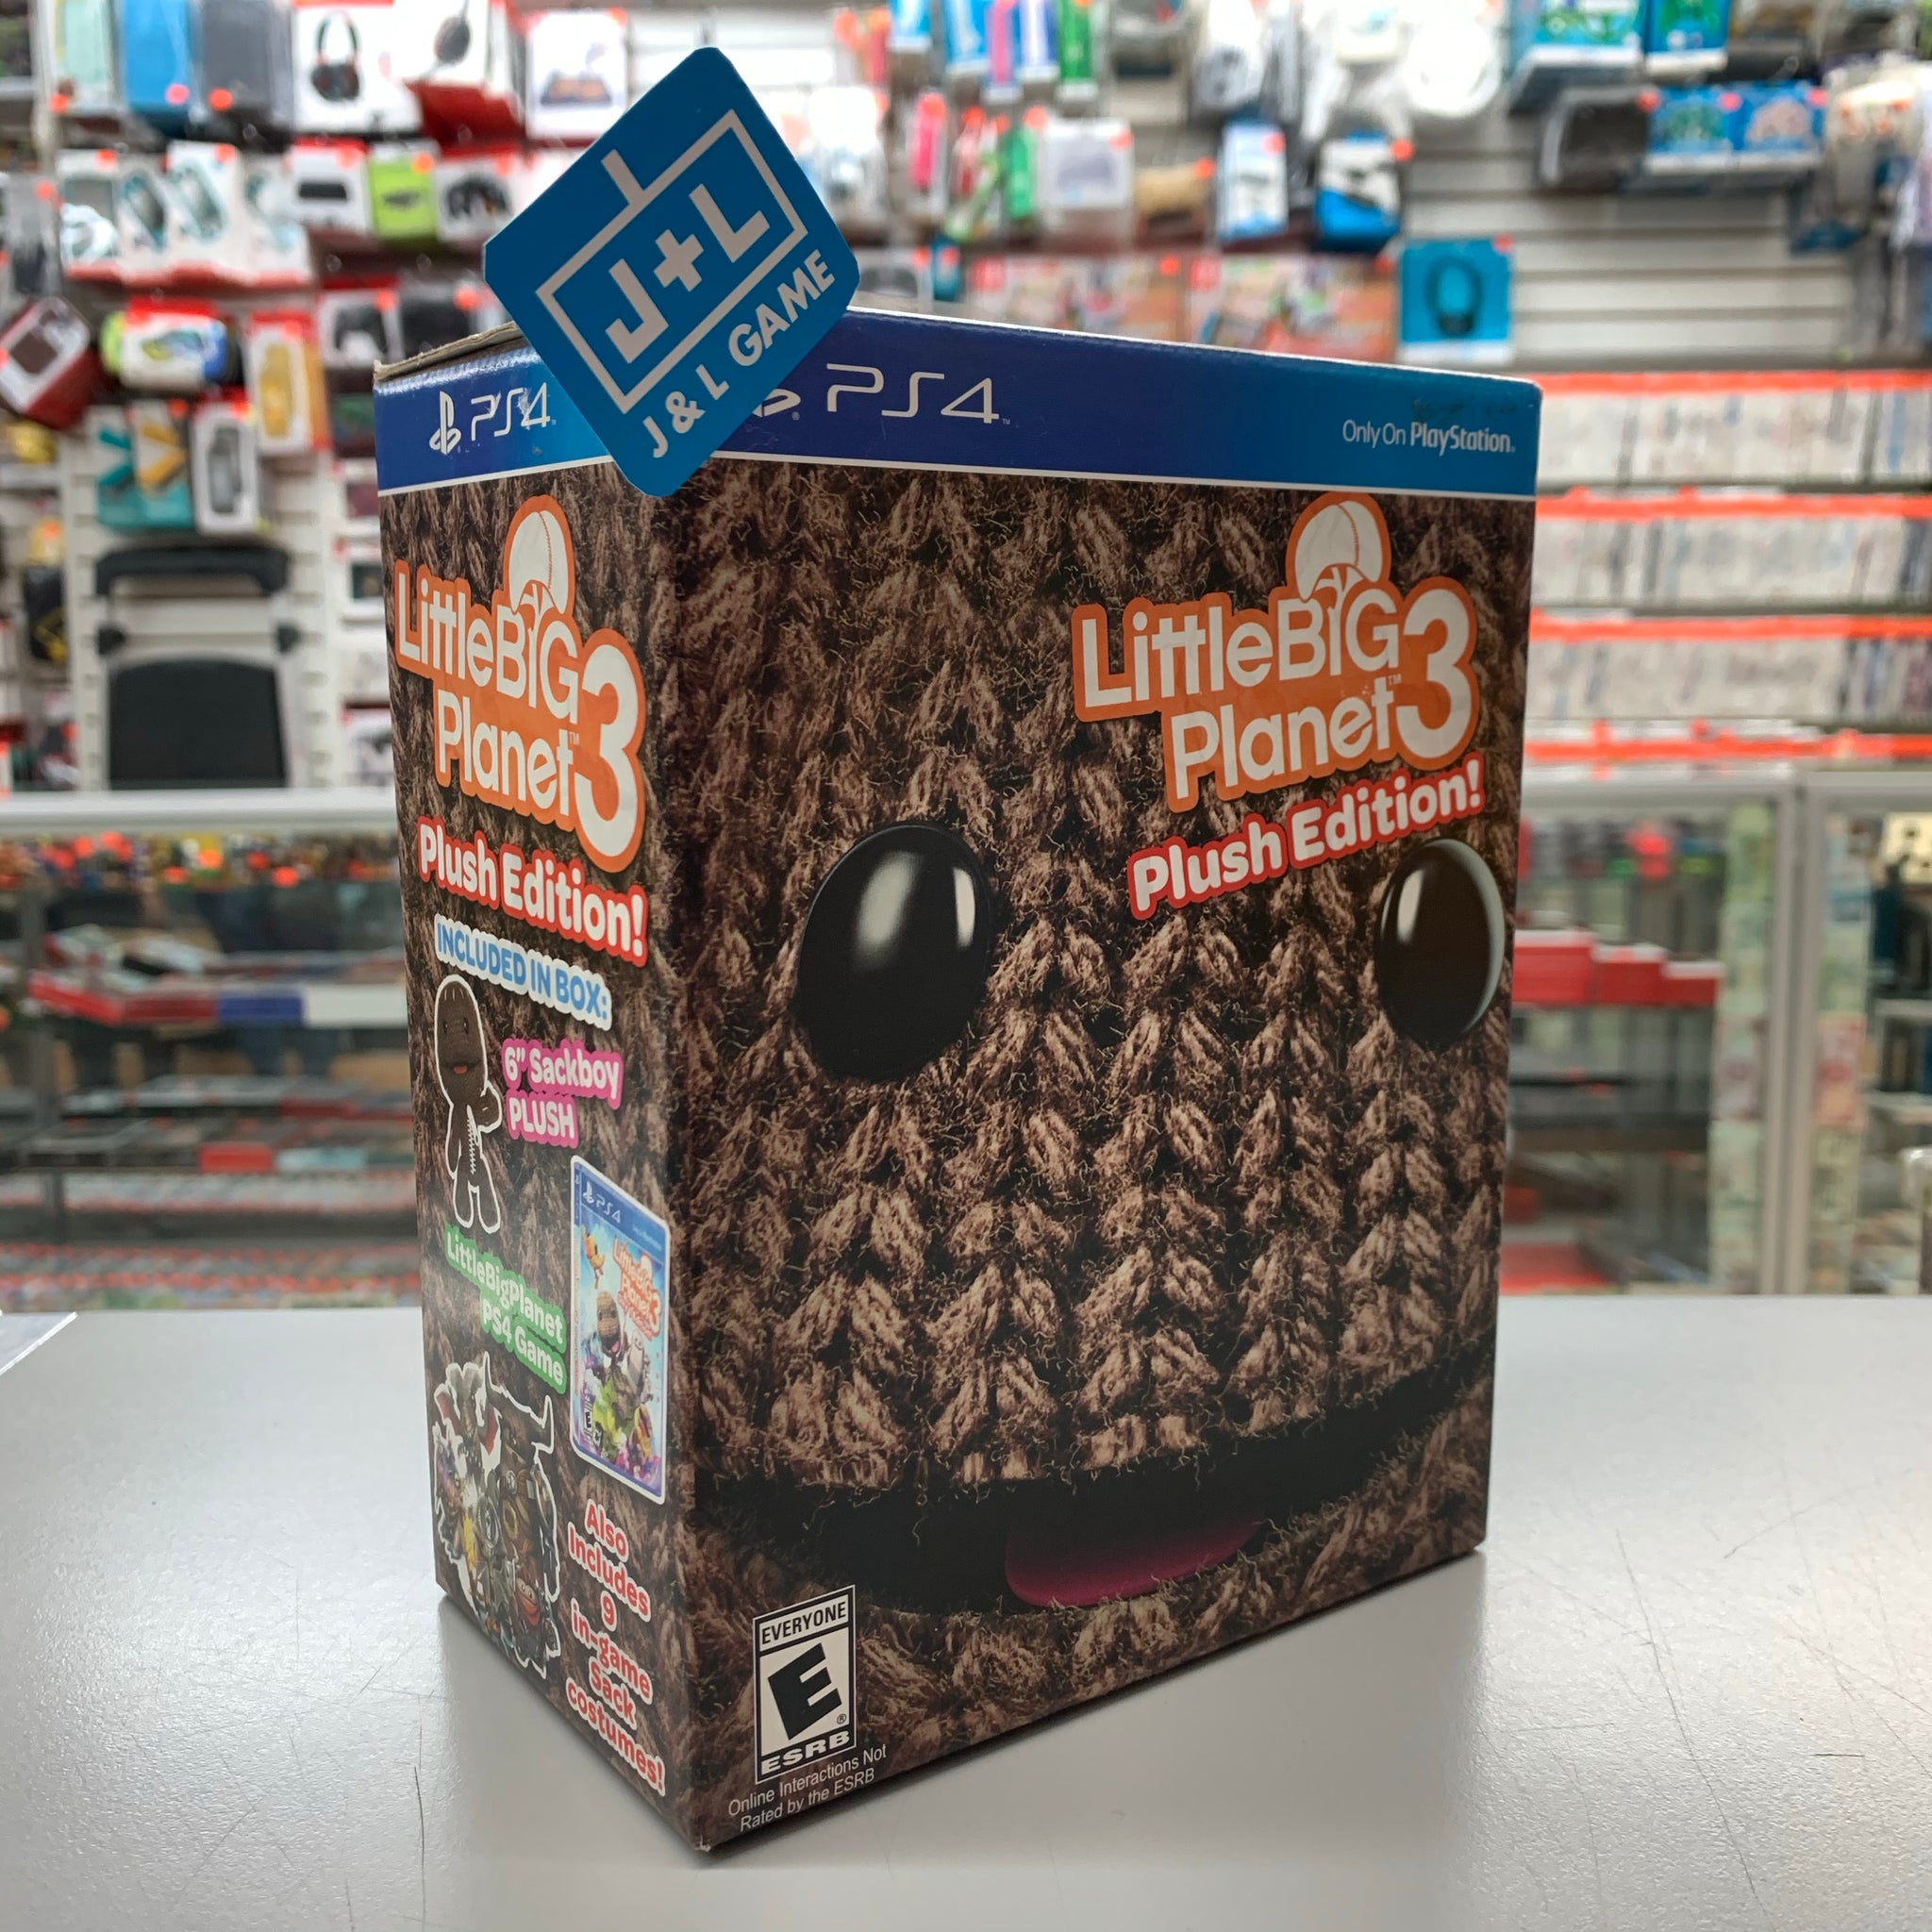 LittleBigPlanet 3 - PlayStation 4, PlayStation 4